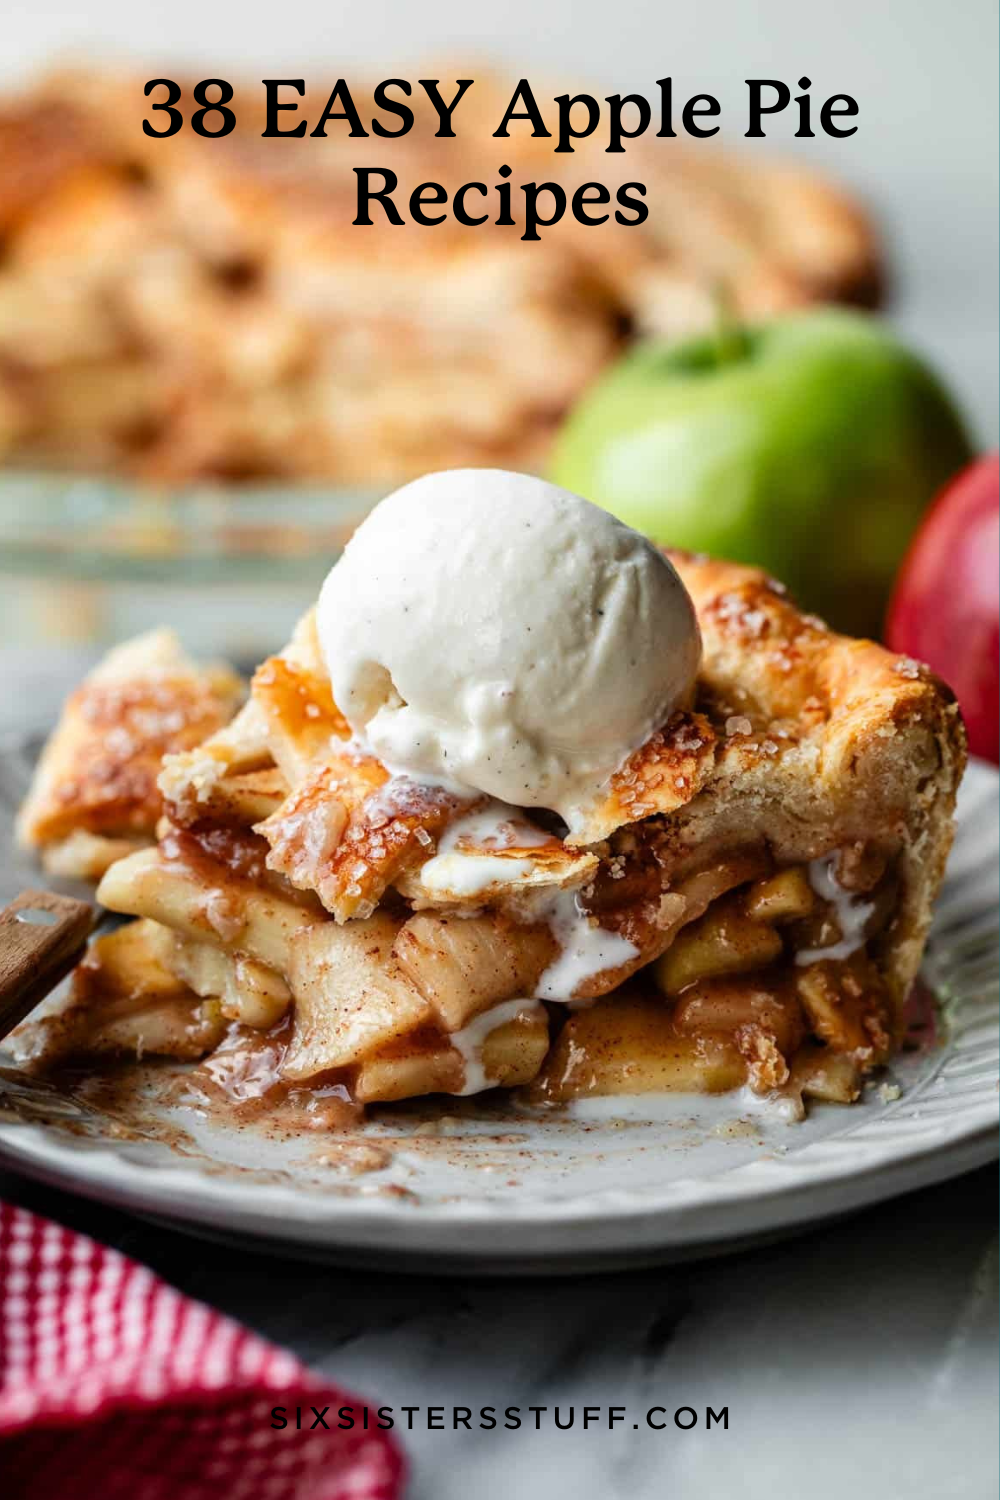 38 EASY Apple Pie Recipes